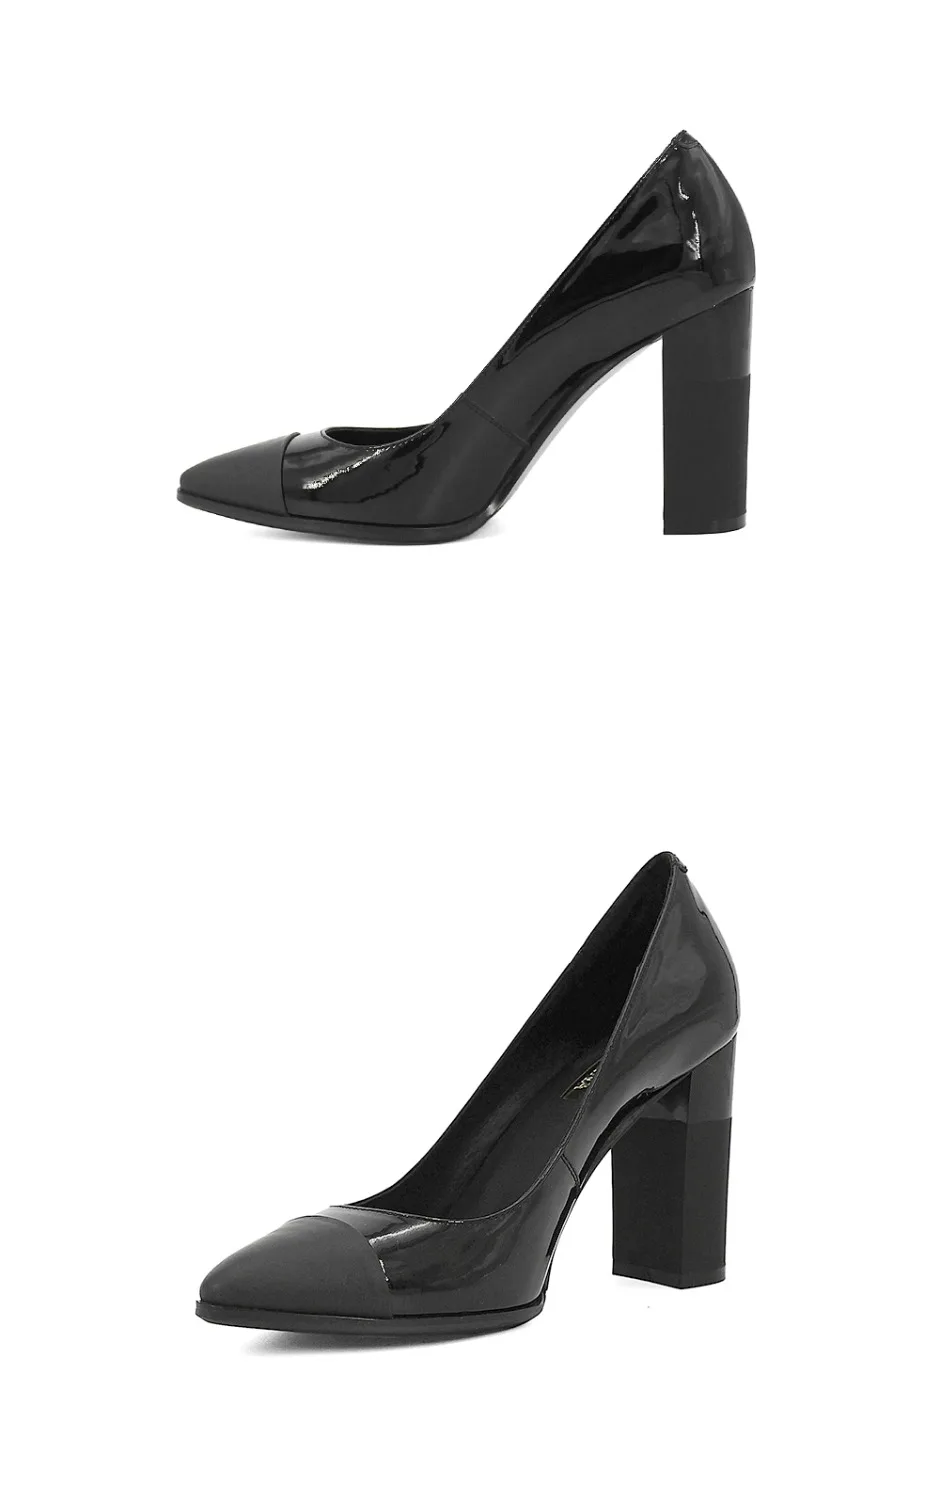 SOPHITINA/элегантные женские туфли-лодочки; пикантные туфли-лодочки с острым носком на высоком каблуке; вечерние туфли из натуральной кожи высокого качества; Женская обувь в деловом стиле; D16